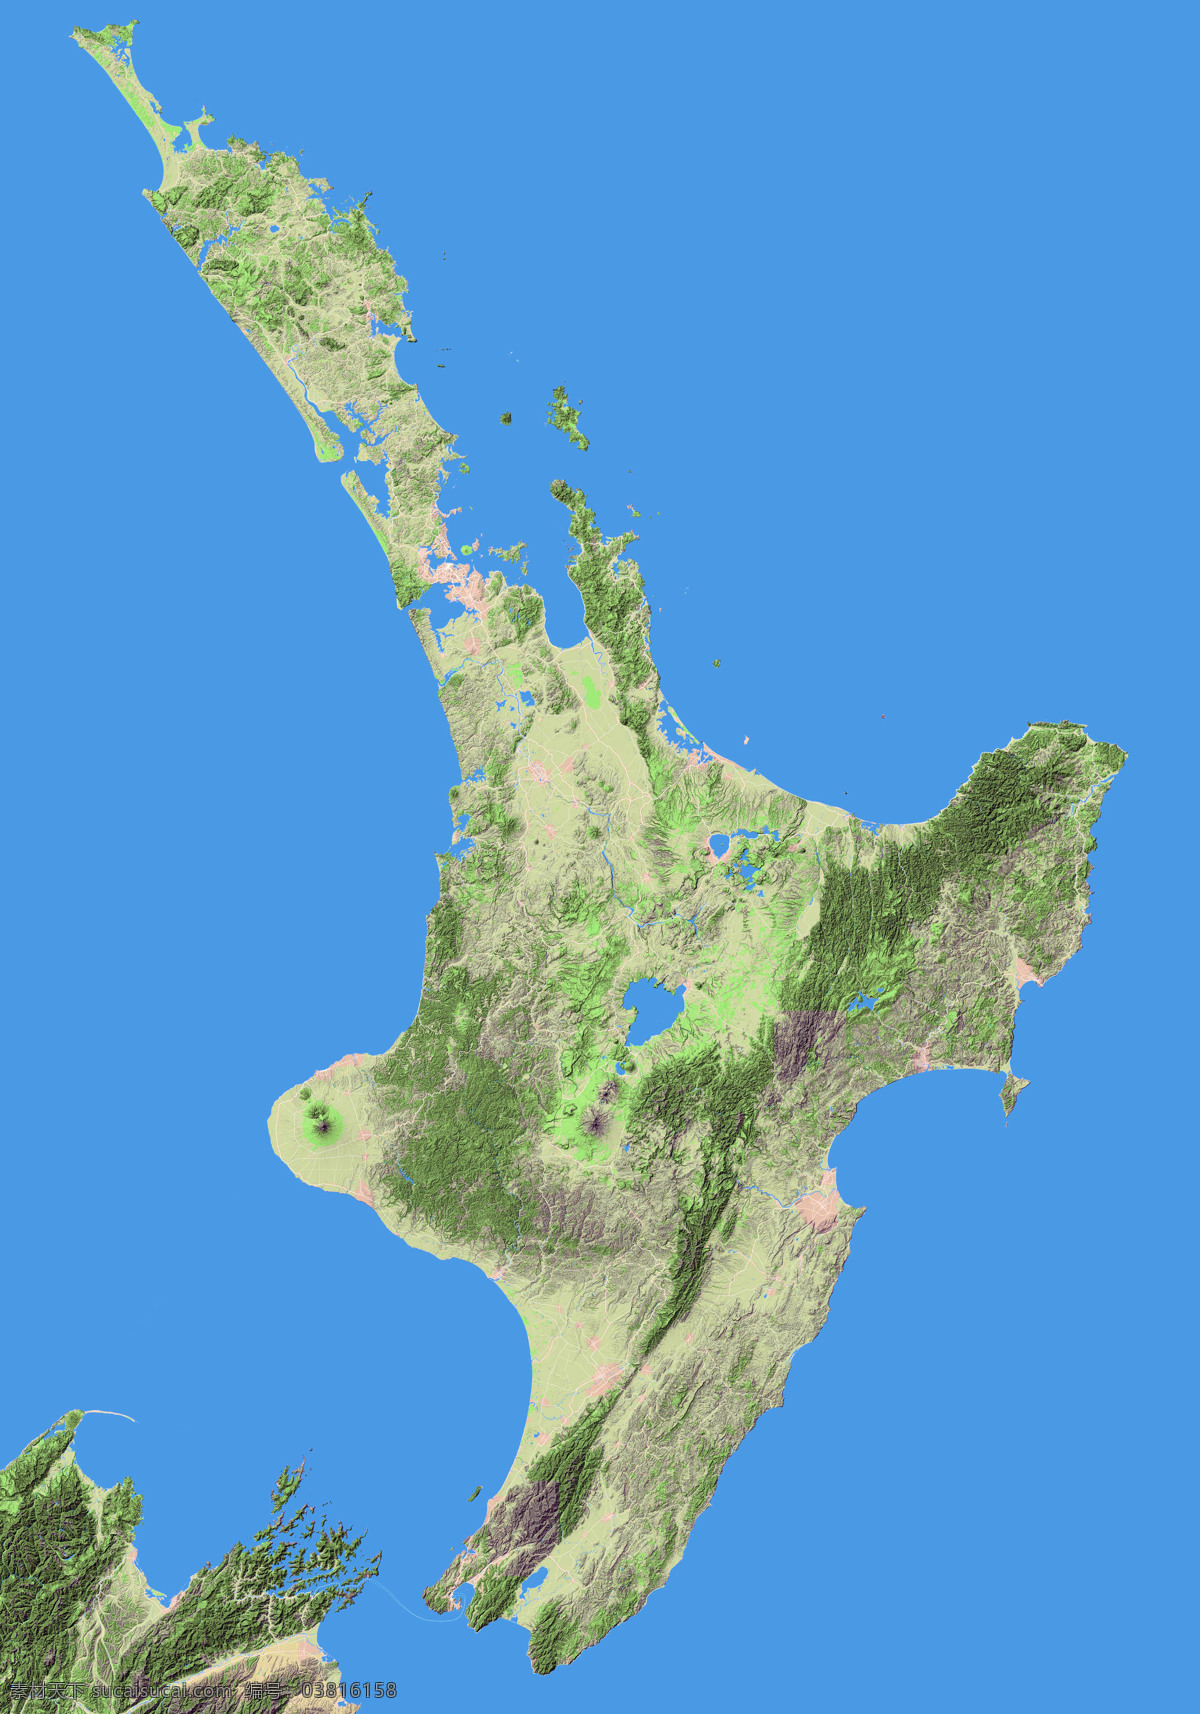 新西兰 北岛地形图 北岛 惠灵顿 奥克兰 地形图 欧洲 上帝之眼 卫星图 俯视图 nasa 地中海 海洋 山地 西西里岛 撒丁岛 阿尔卑斯山 南欧 东欧 地球 自然景观 自然风景